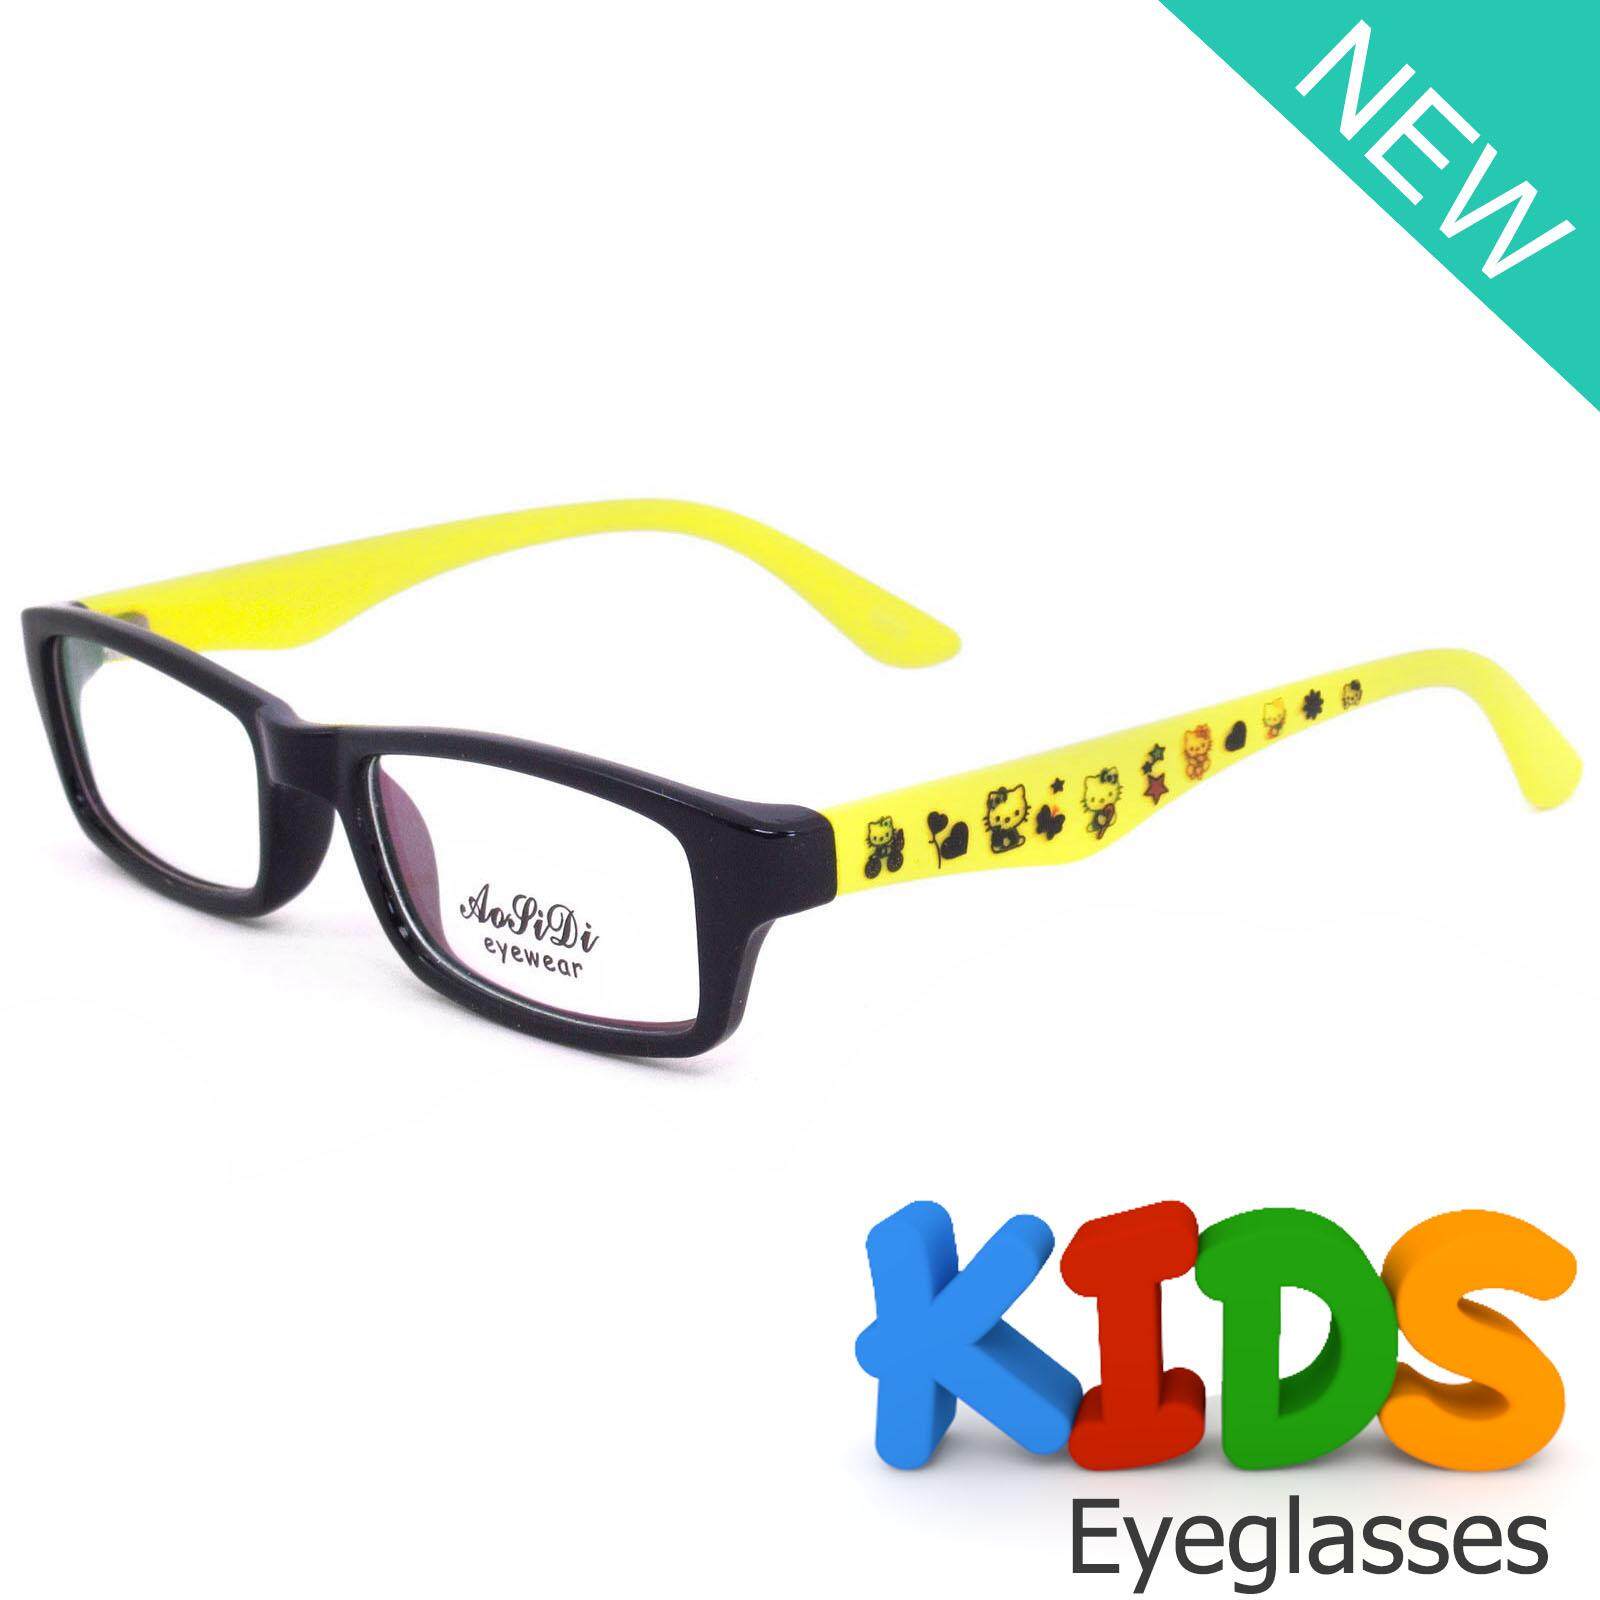 แว่นตาเกาหลีเด็ก Fashion Korea Children แว่นตาเด็ก รุ่น 1608 C-13 สีดำขาเหลือง กรอบแว่นตาเด็ก Rectangle ทรงสี่เหลี่ยมผืนผ้า Eyeglass baby frame ( สำหรับตัดเลนส์ ) วัสดุ PC เบา ขาข้อต่อ Kid leg joints Plastic Grade A material Eyewear Top Glasses